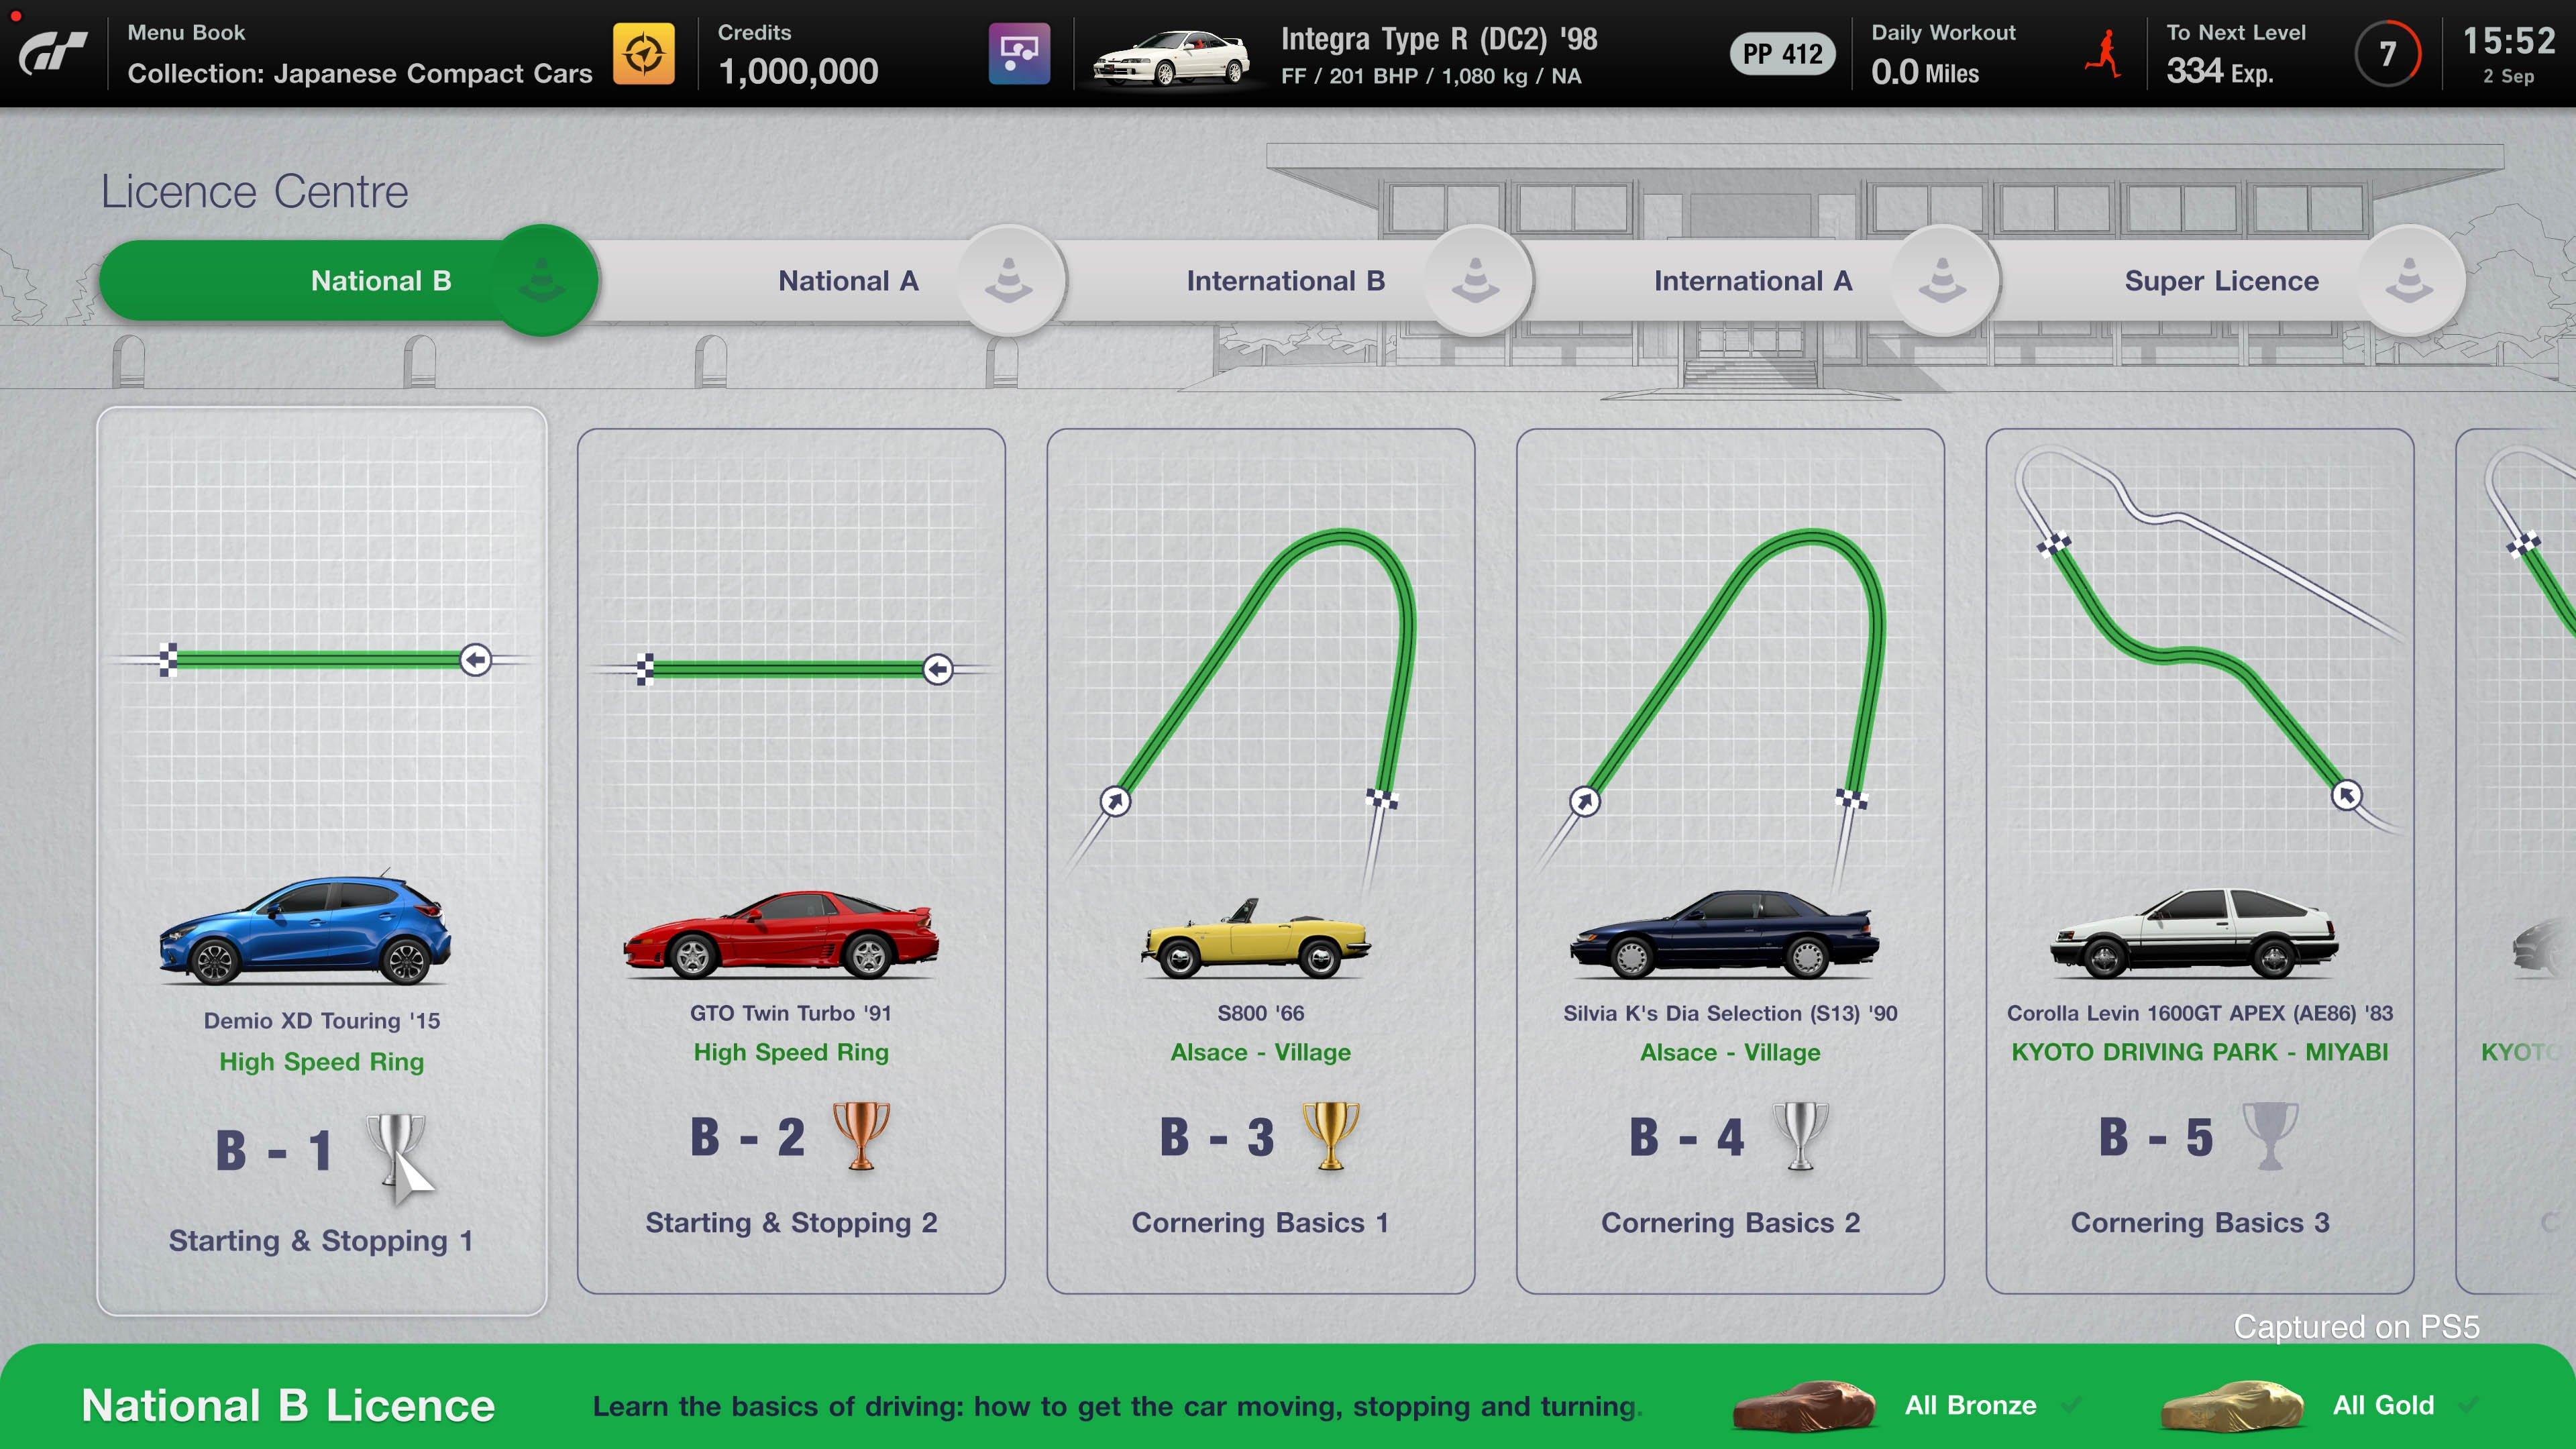 PS5) Gran Turismo 7 Digital Download Code Japanese